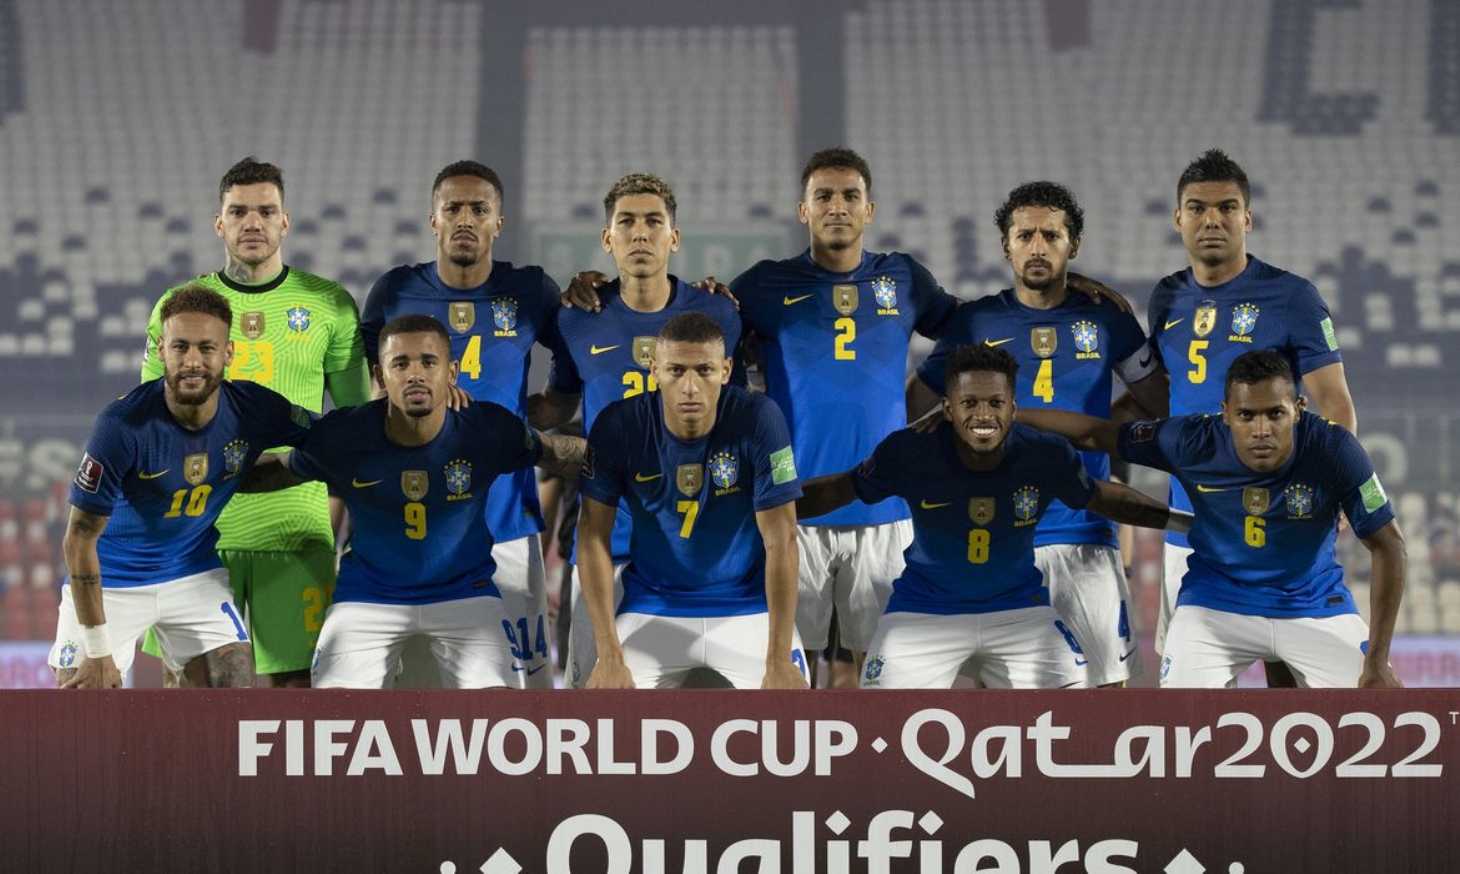 Jogadores da seleção brasileira criticam Copa América, mas negam boicote | Jornal da Orla